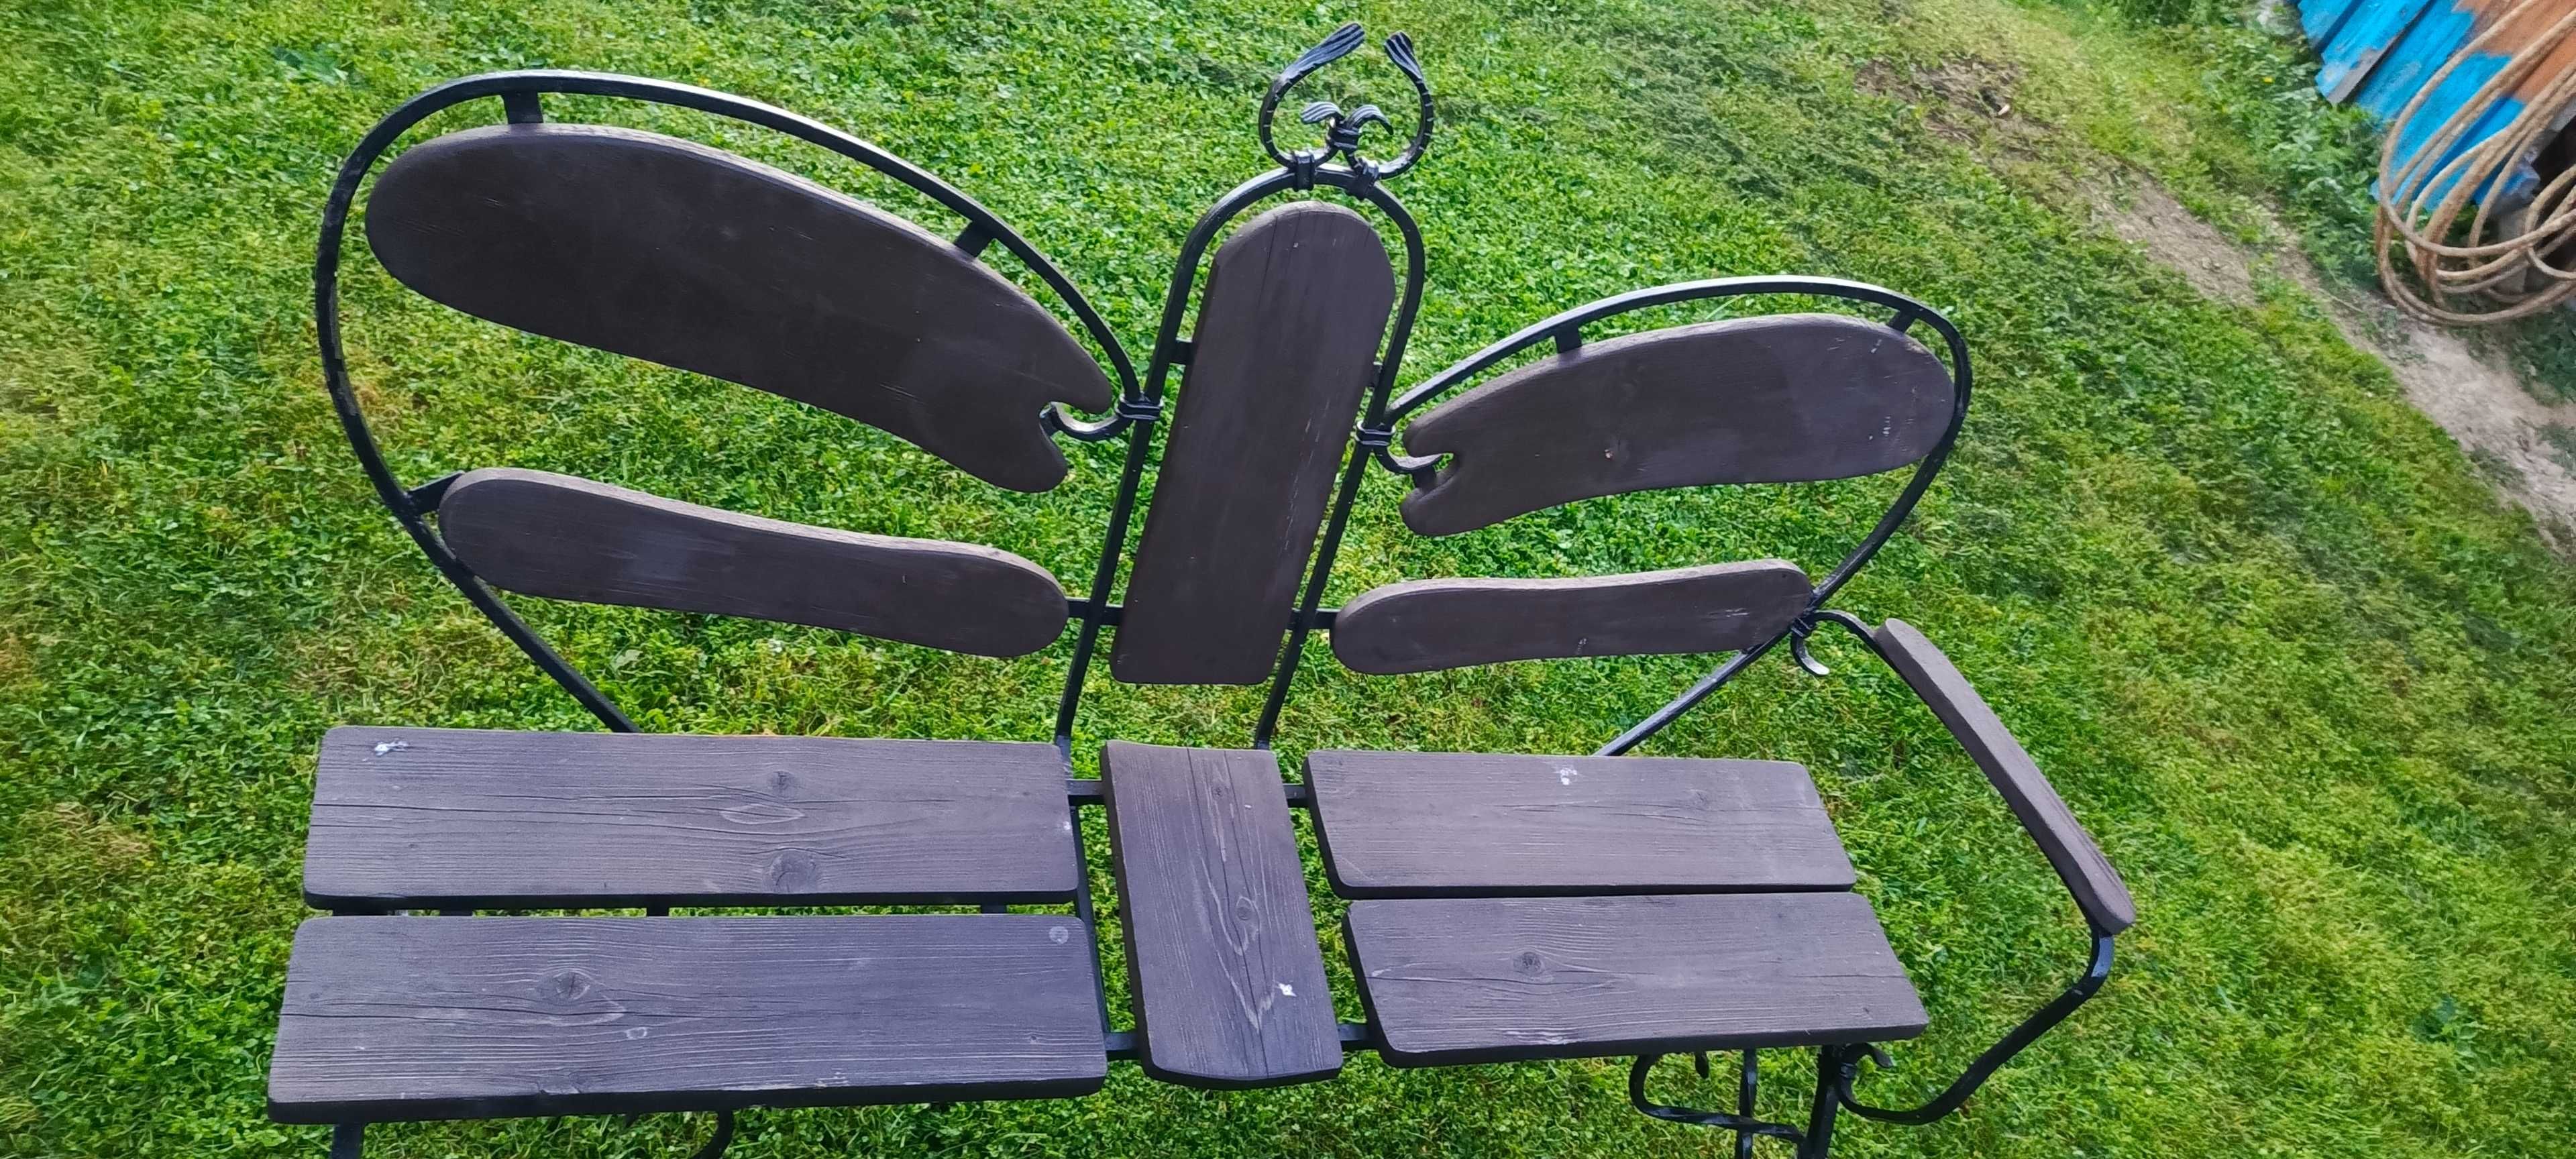 zestaw ogrodowy z kutej stali, stół + 2 krzesła + 2 ławy